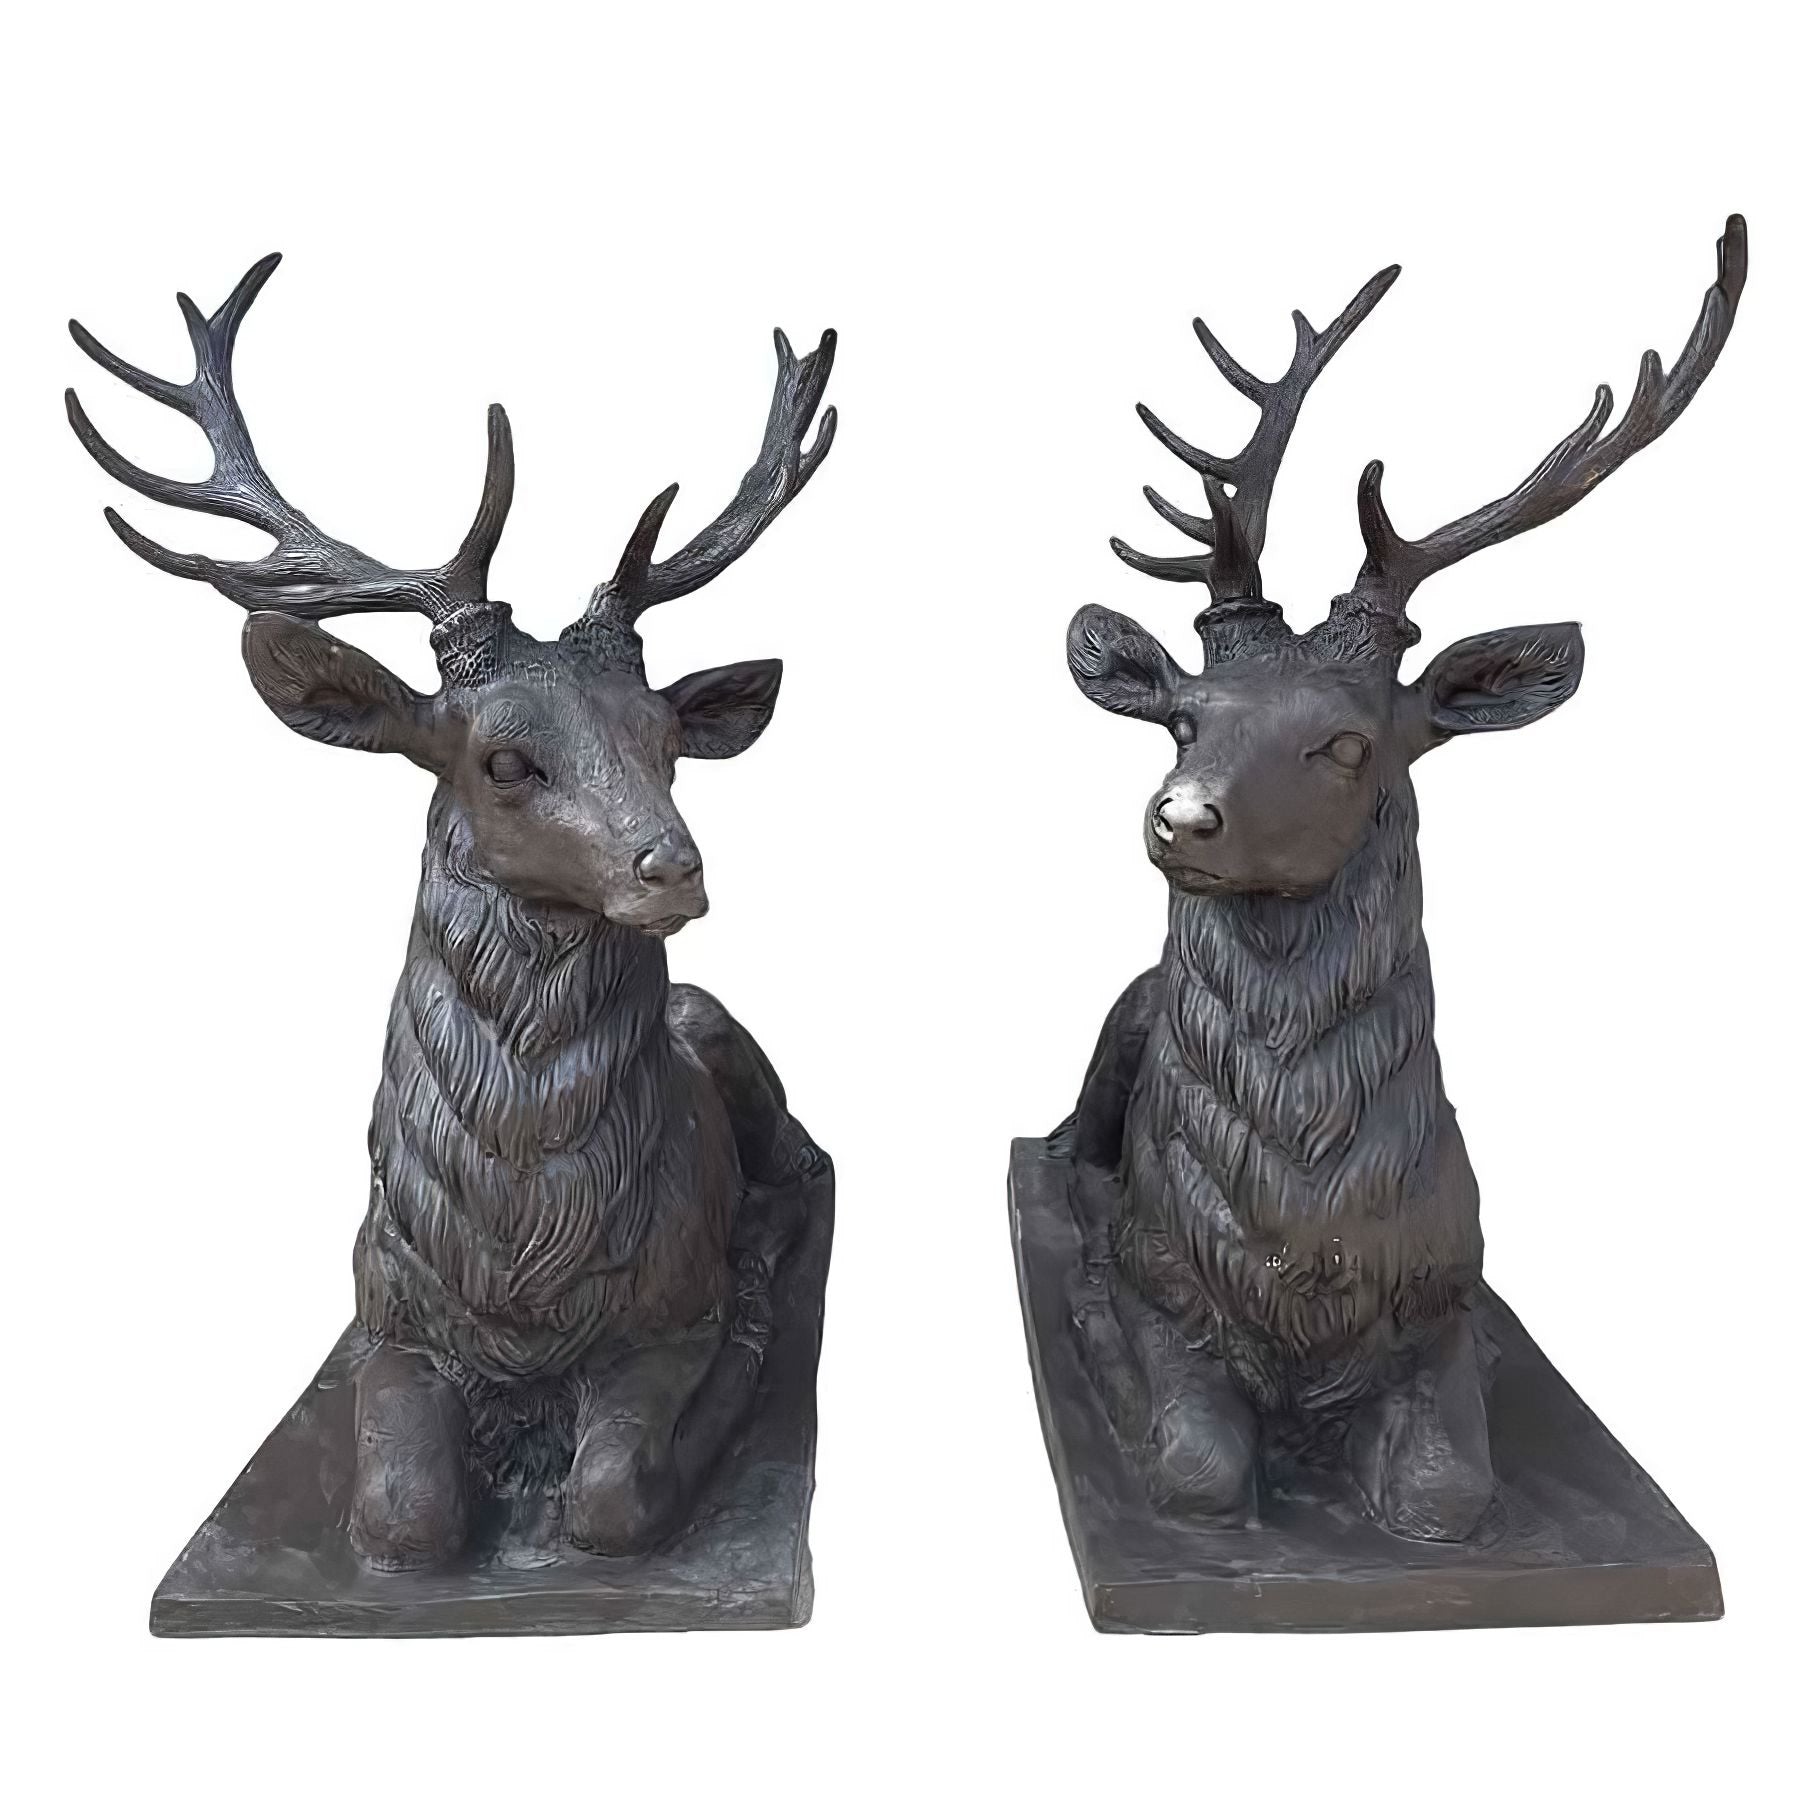 Bronze Lying Deer Statues on Base Pair